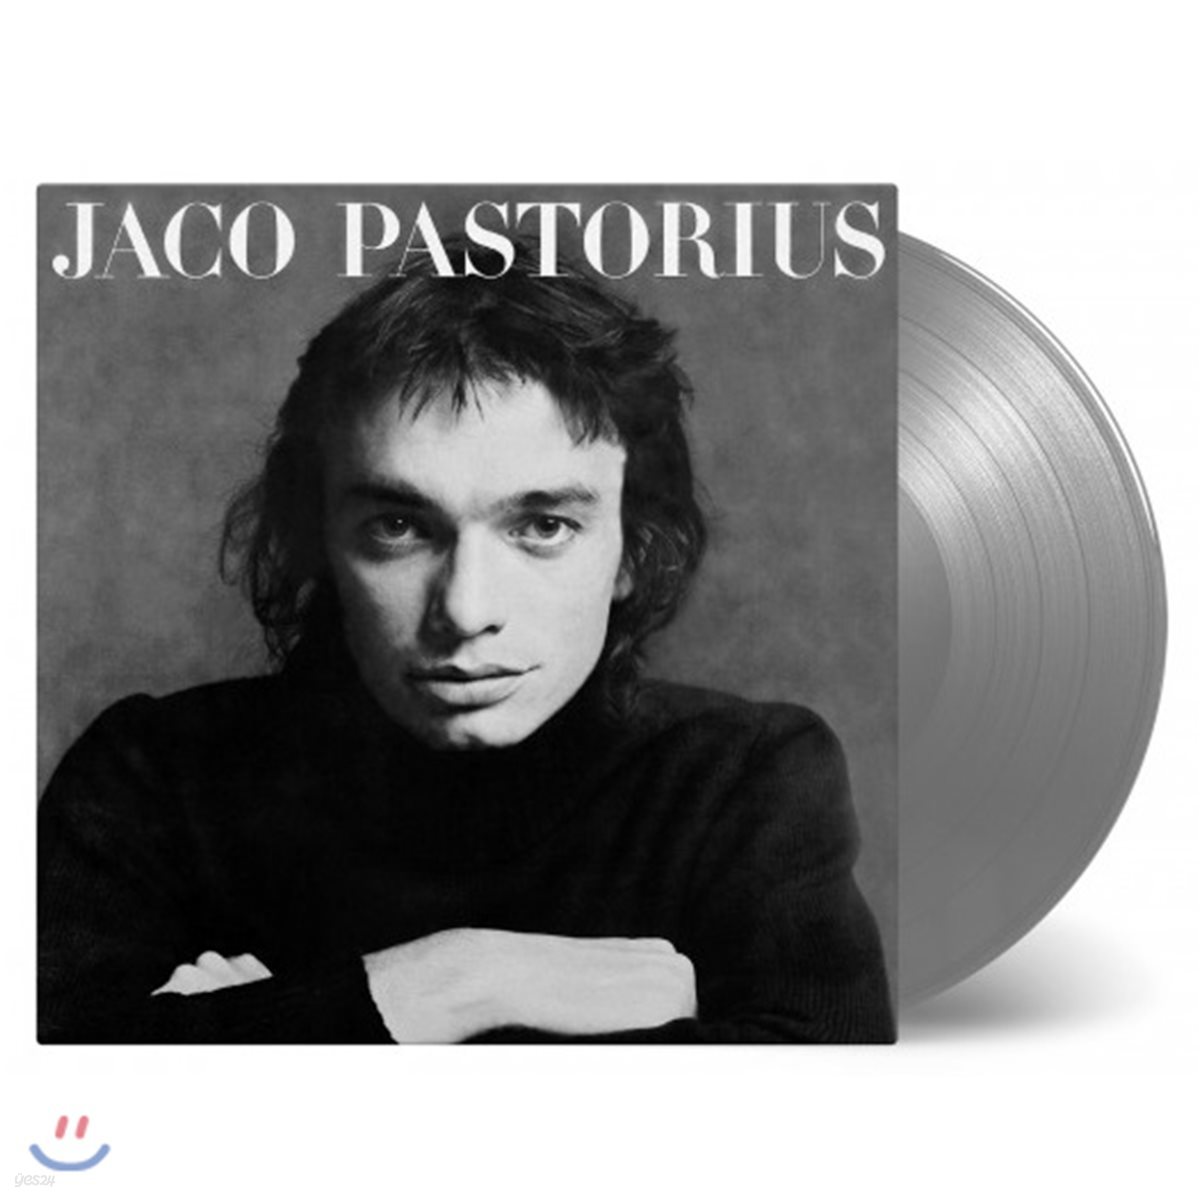 Jaco Pastorius (자코 패스토리우스) - Jaco Pastorius [실버 컬러 LP]